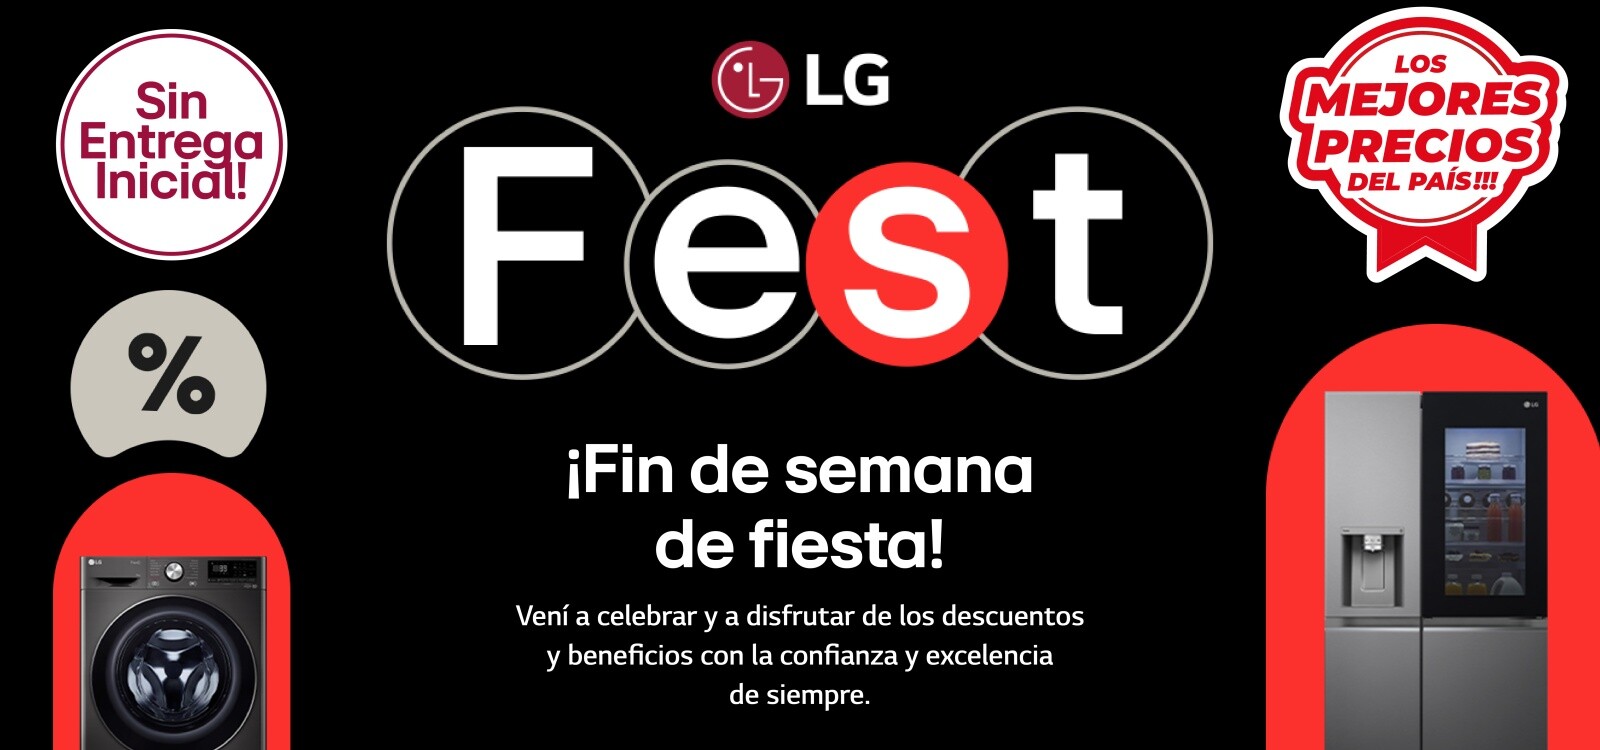 LG Fest